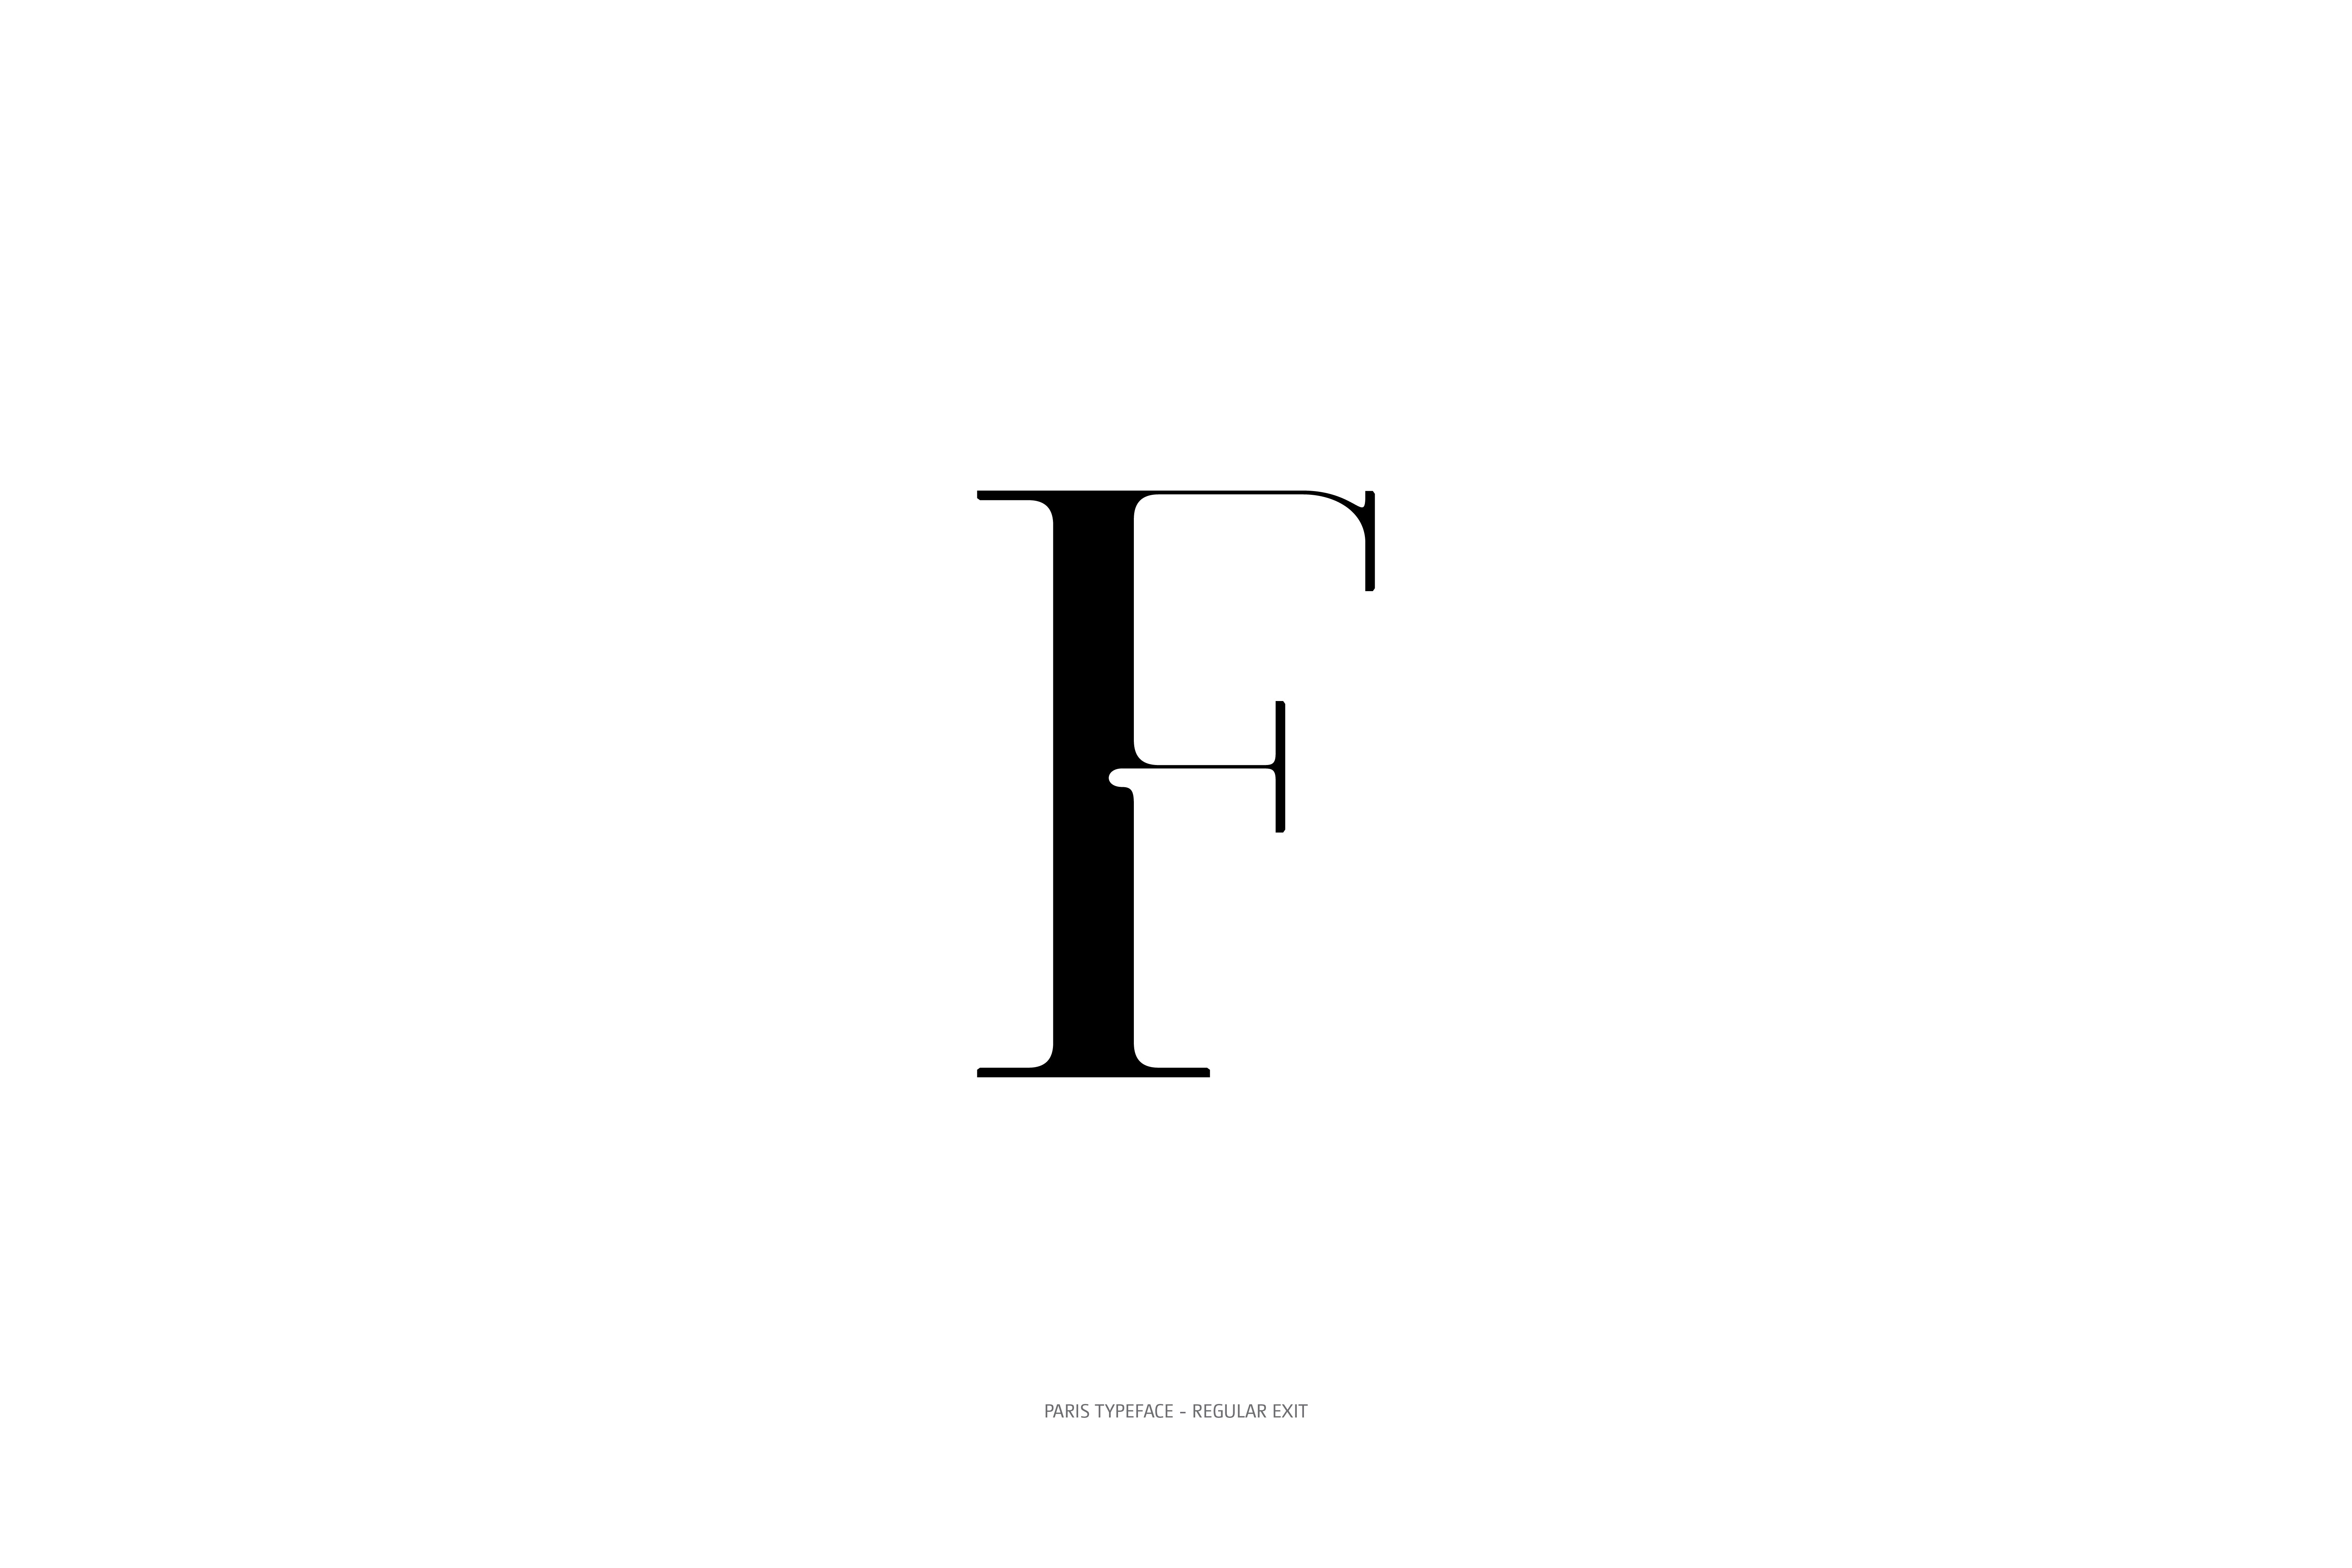 Paris Typeface Regular Exit F